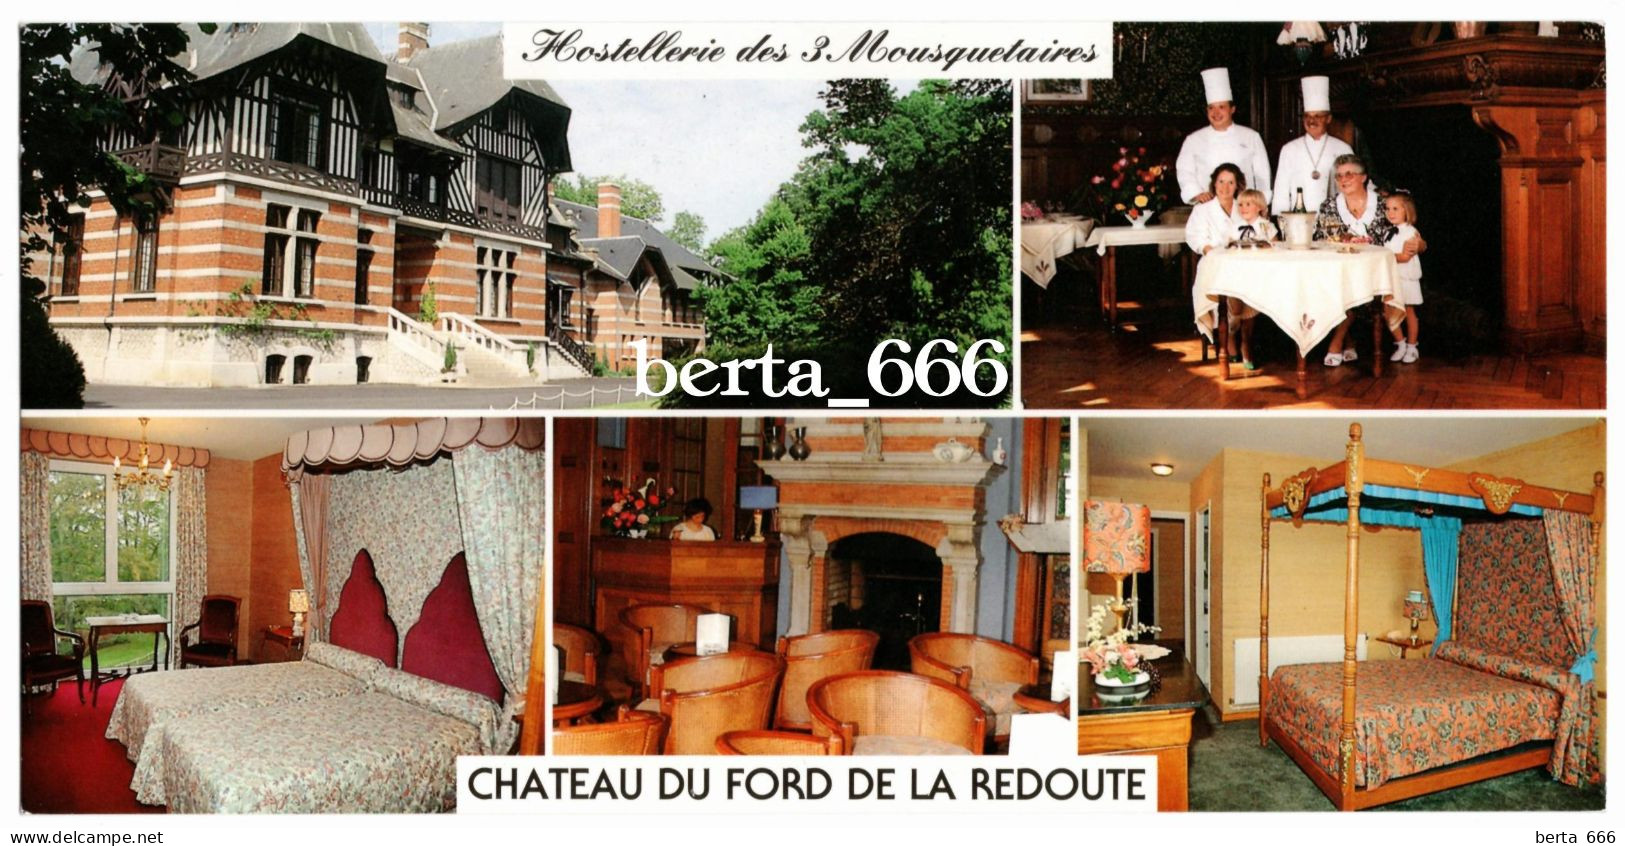 France Hostellerie Des 3 Mousquetaires Chateau Du Ford De La Redoute Hotel Panoramic Large Size - Hotels & Restaurants